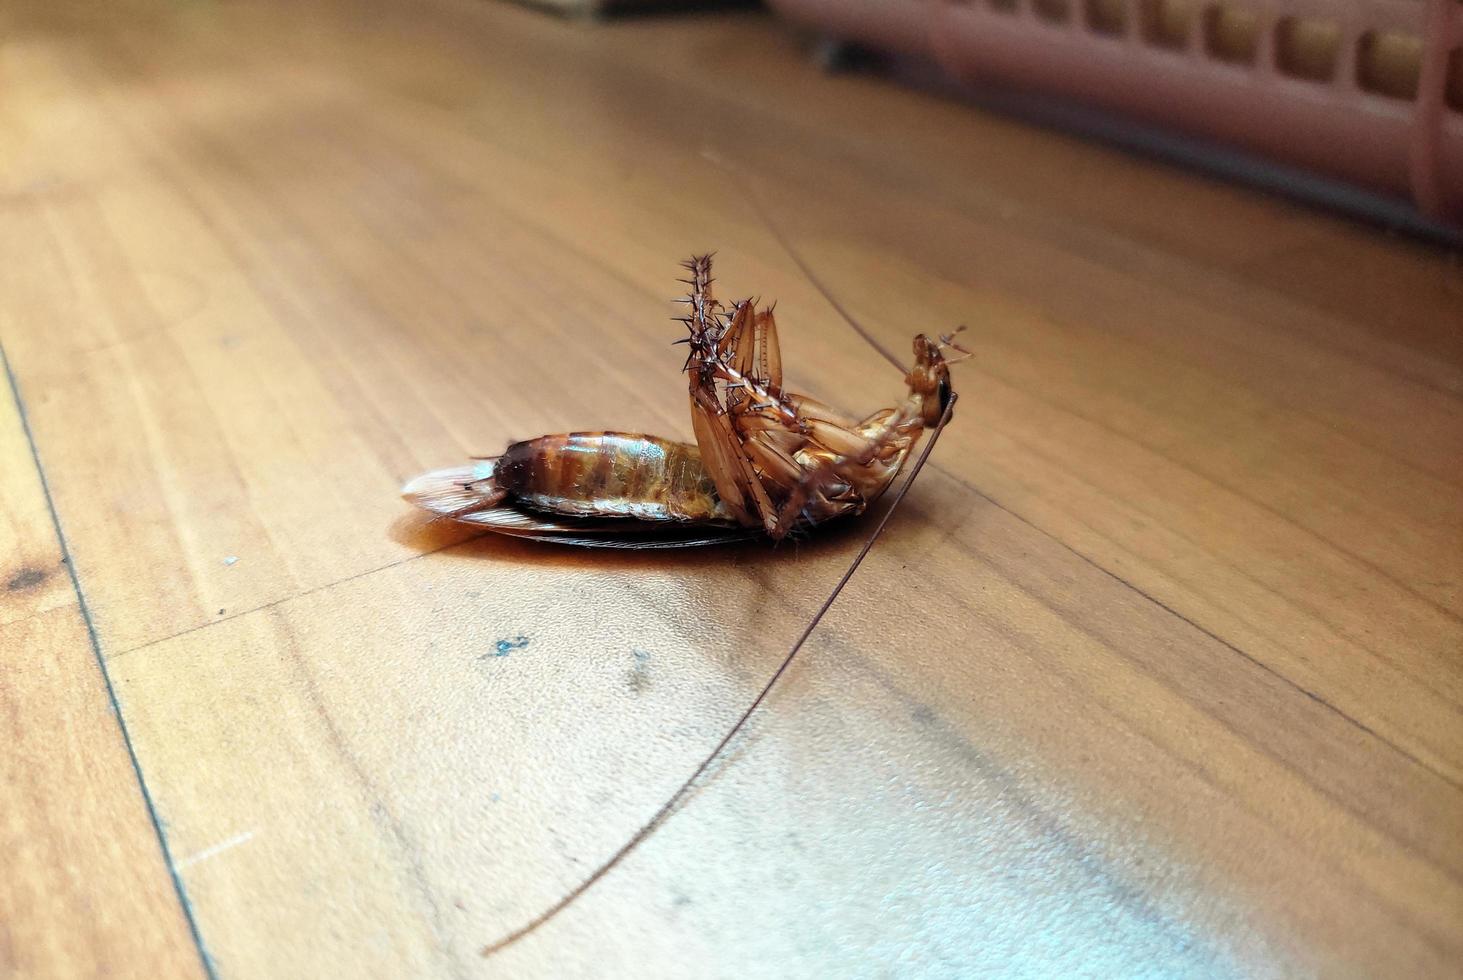 tot Kakerlaken auf das Boden. foto